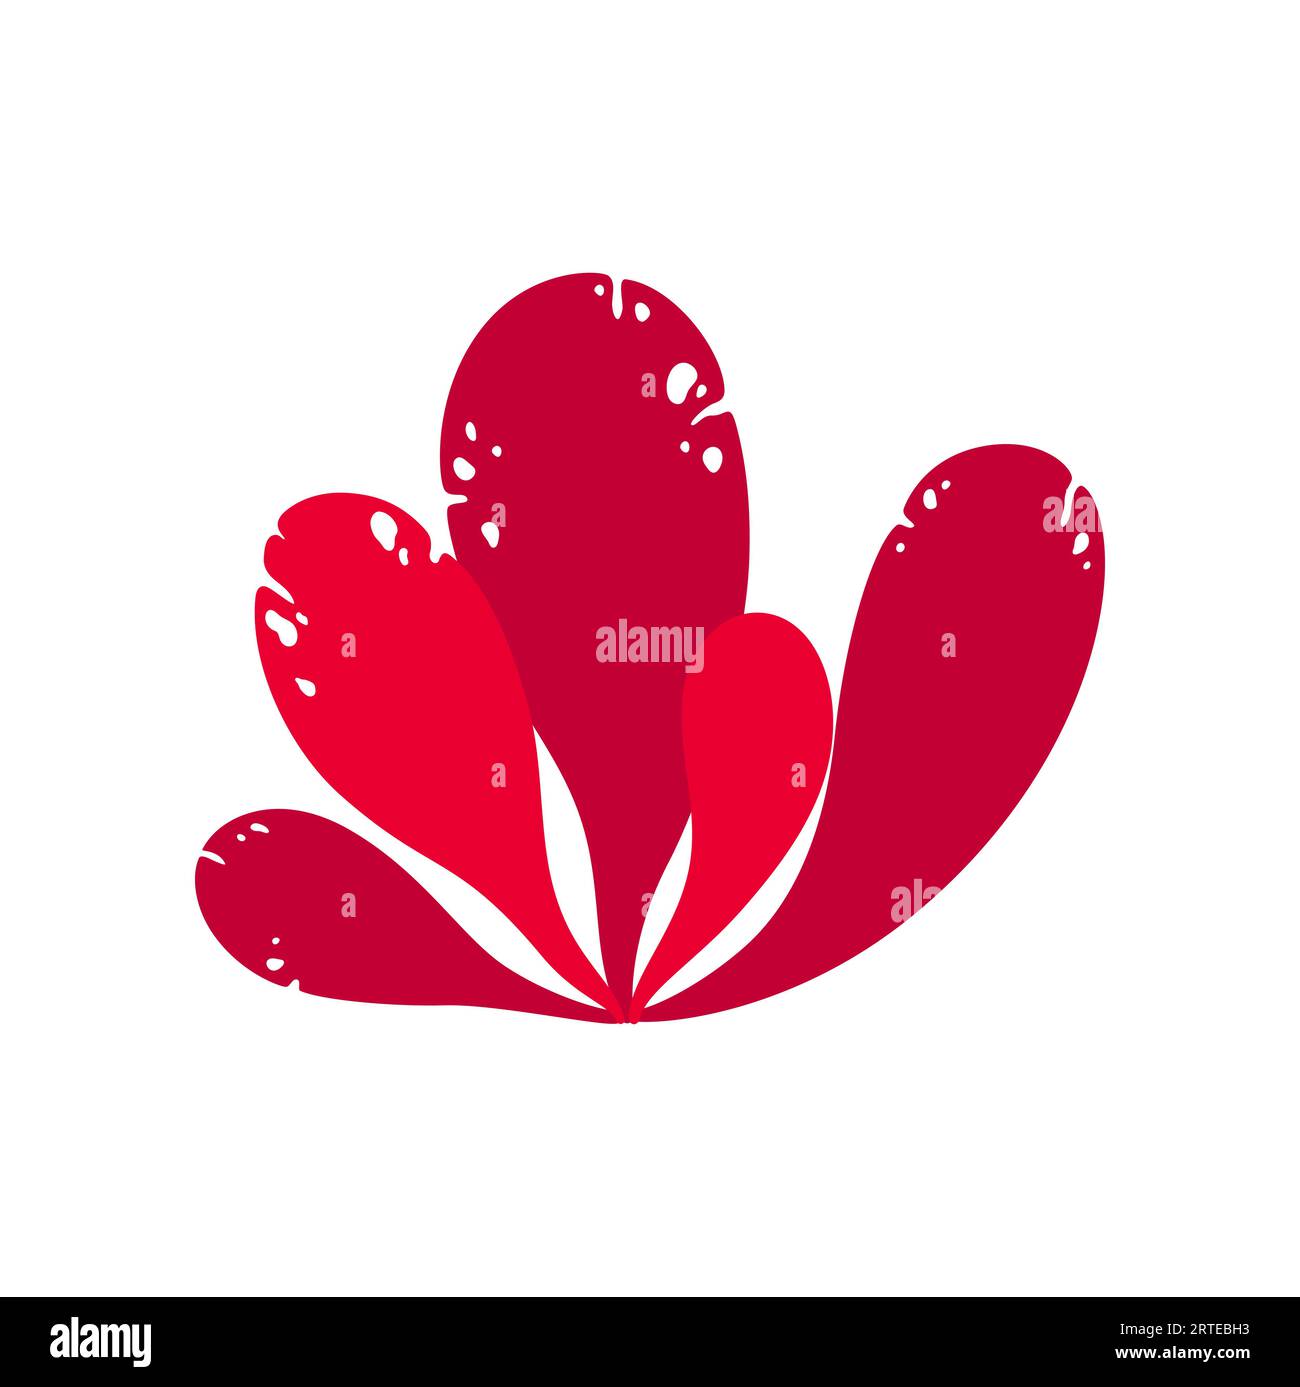 Anemone corallo morbido di colore rosso, alghe con l'icona delle foglie larghe. Polipo subacqueo vettoriale che cresce nelle acque profonde, pianta acquatica gorgoniana Illustrazione Vettoriale